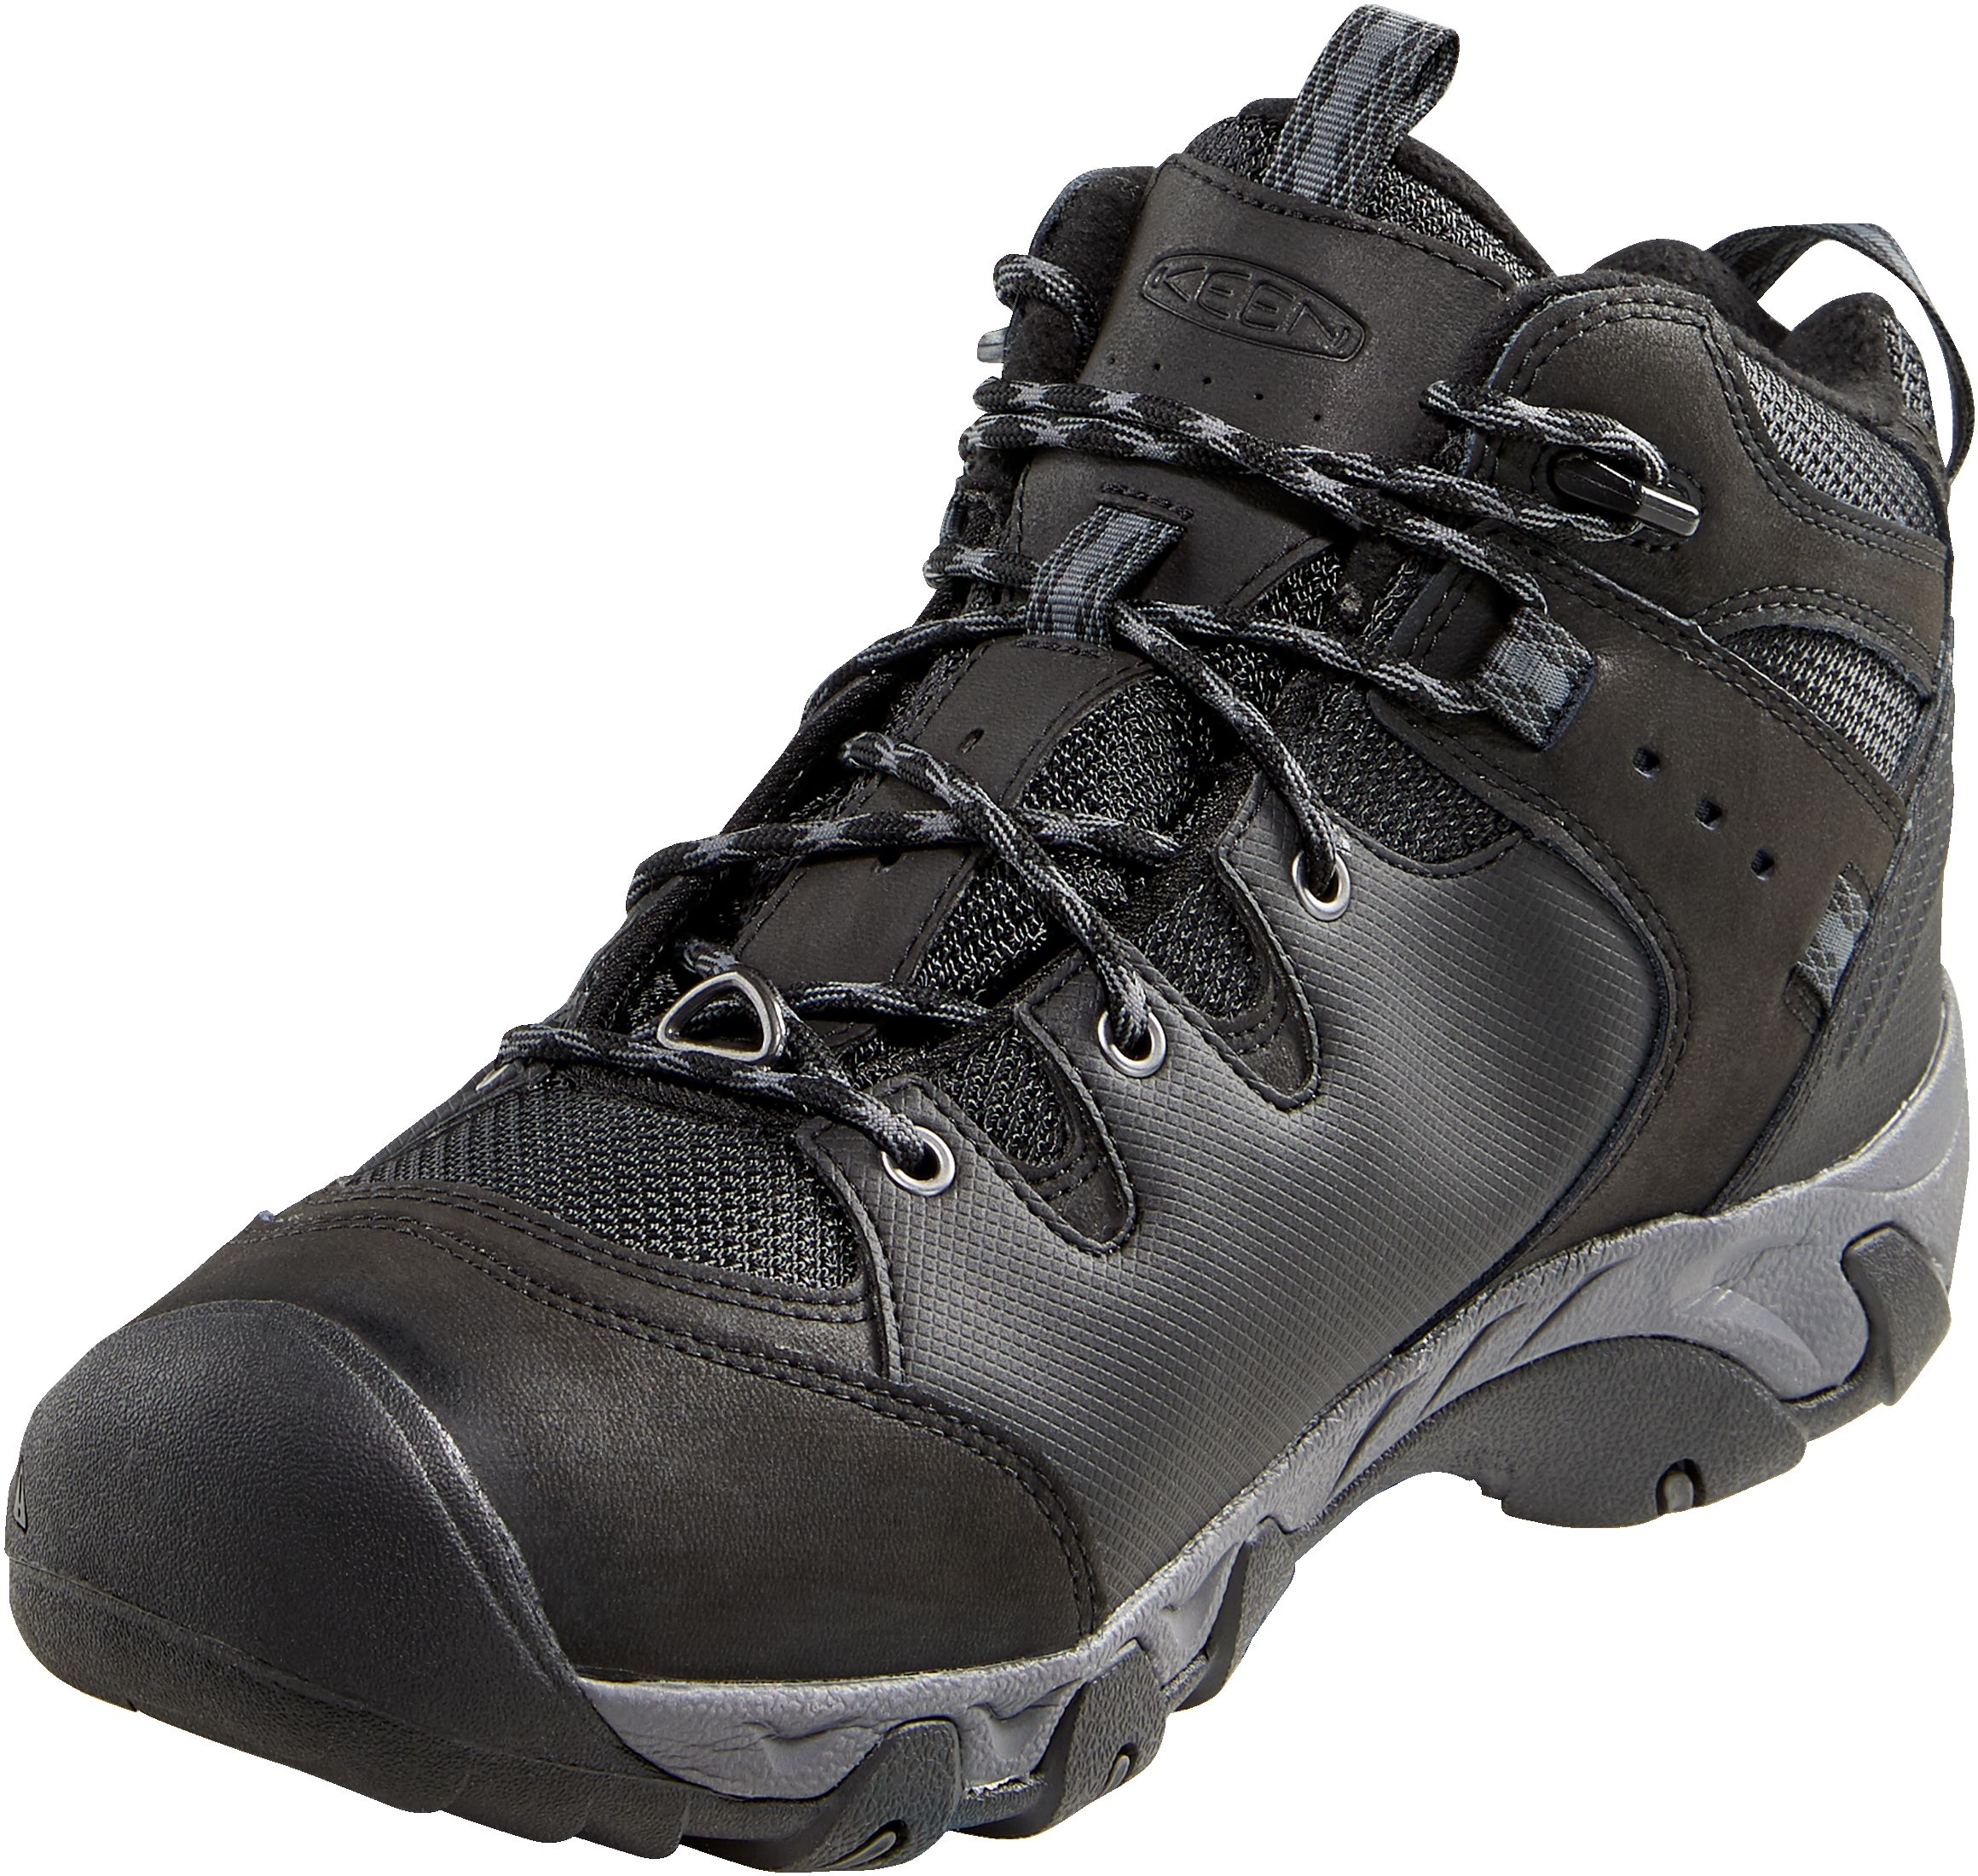 KEEN® Men's Koven Mid Waterproof Hiking Boots